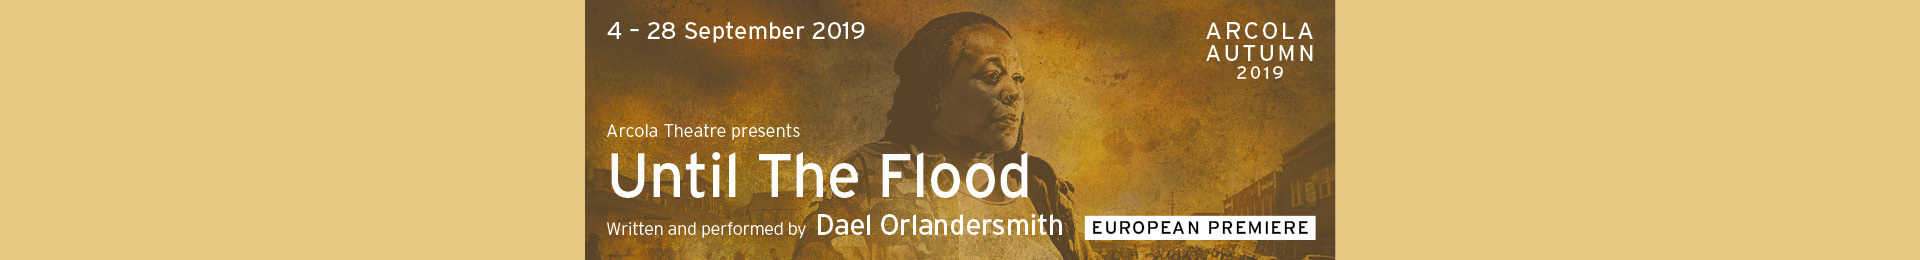 Until The Flood banner image